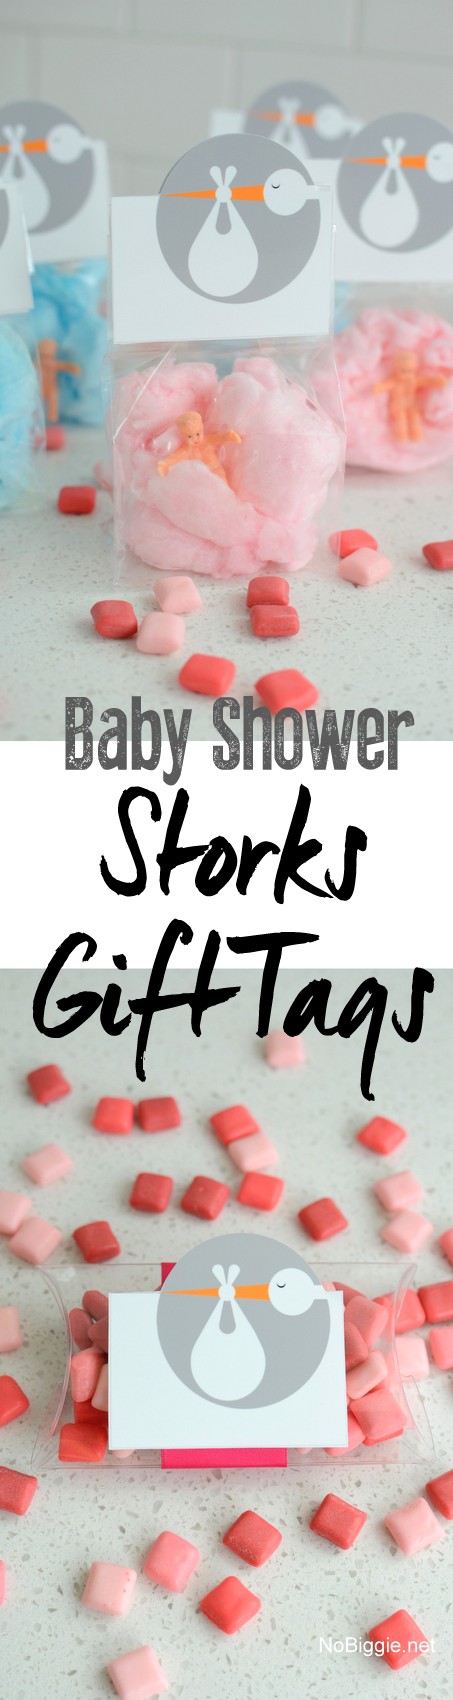 baby shower storks gift tags | NoBiggie.net